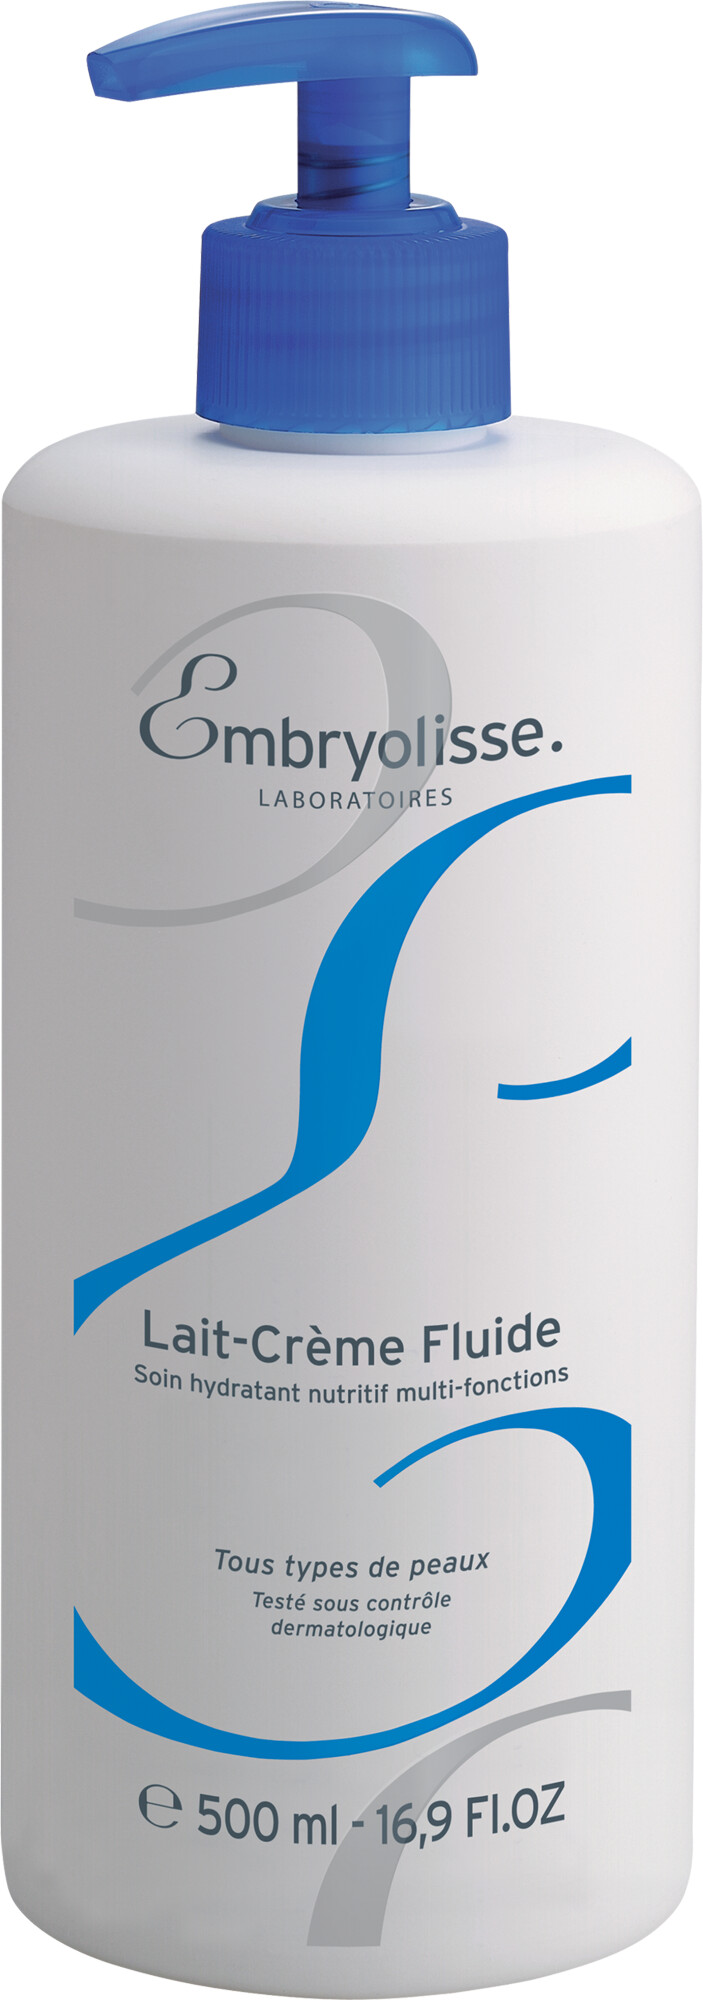 Embryolisse Lait-Creme Fluide 500ml